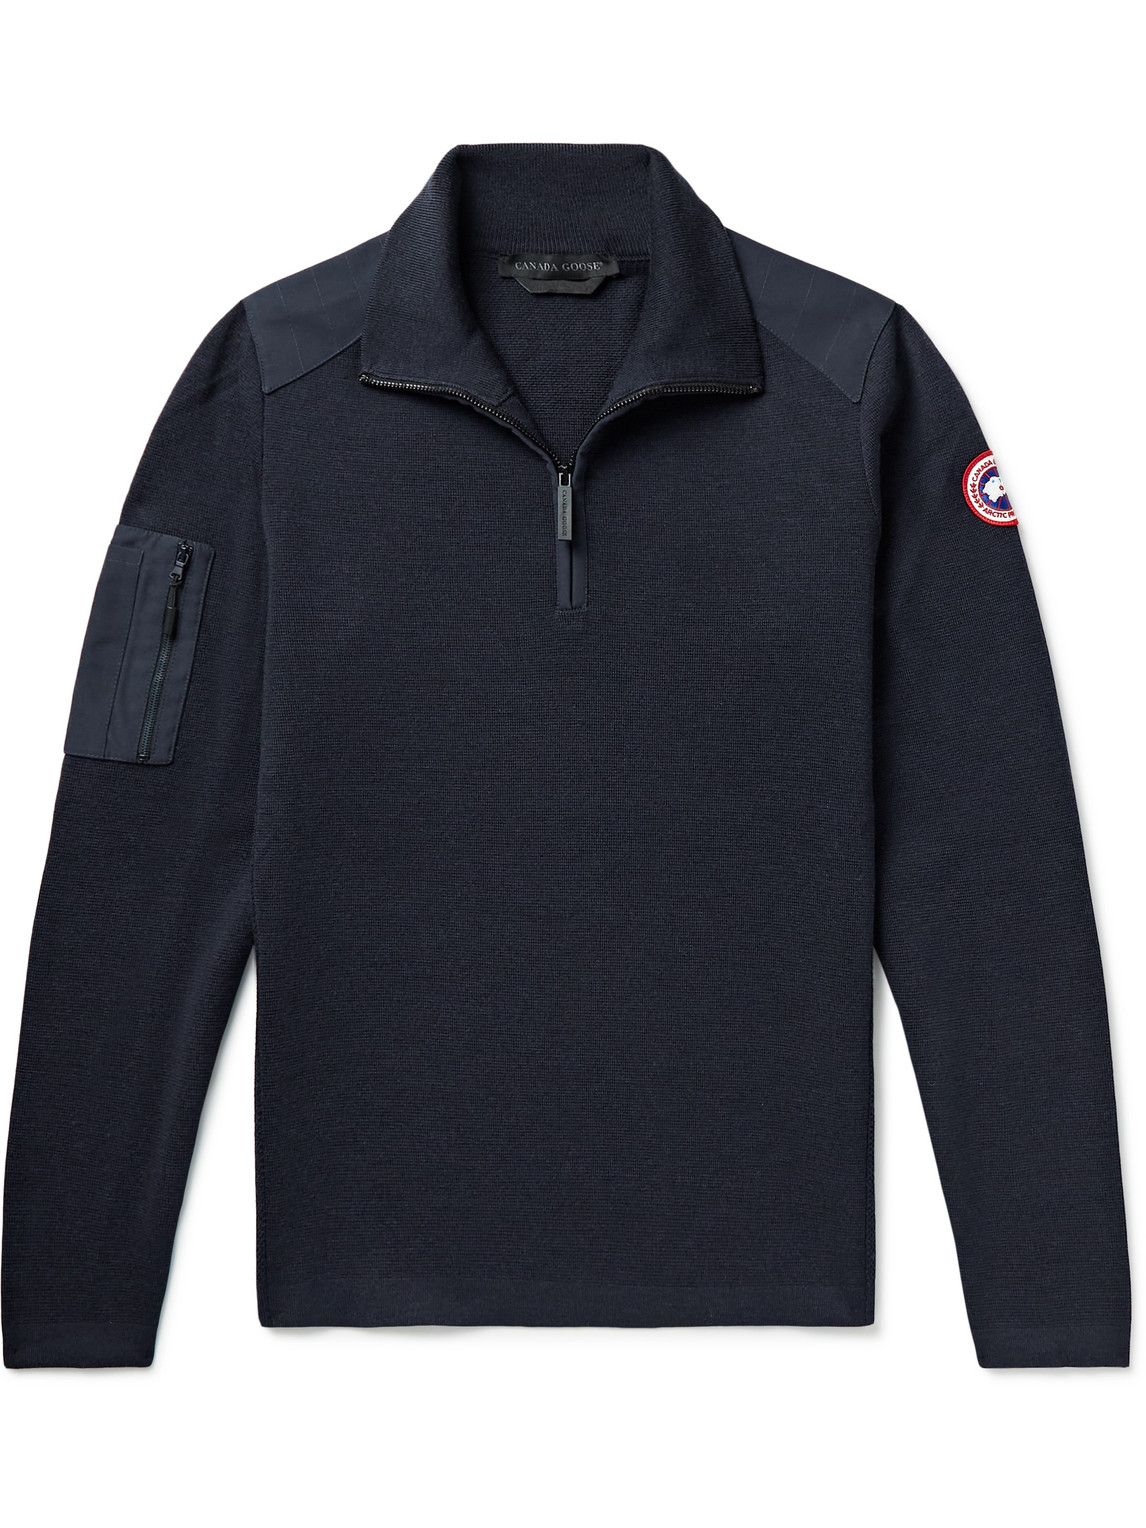 Canada Goose Stormont Slim-Fit CORDURA-Trimmed Merino Wool Half-Zip Sweater